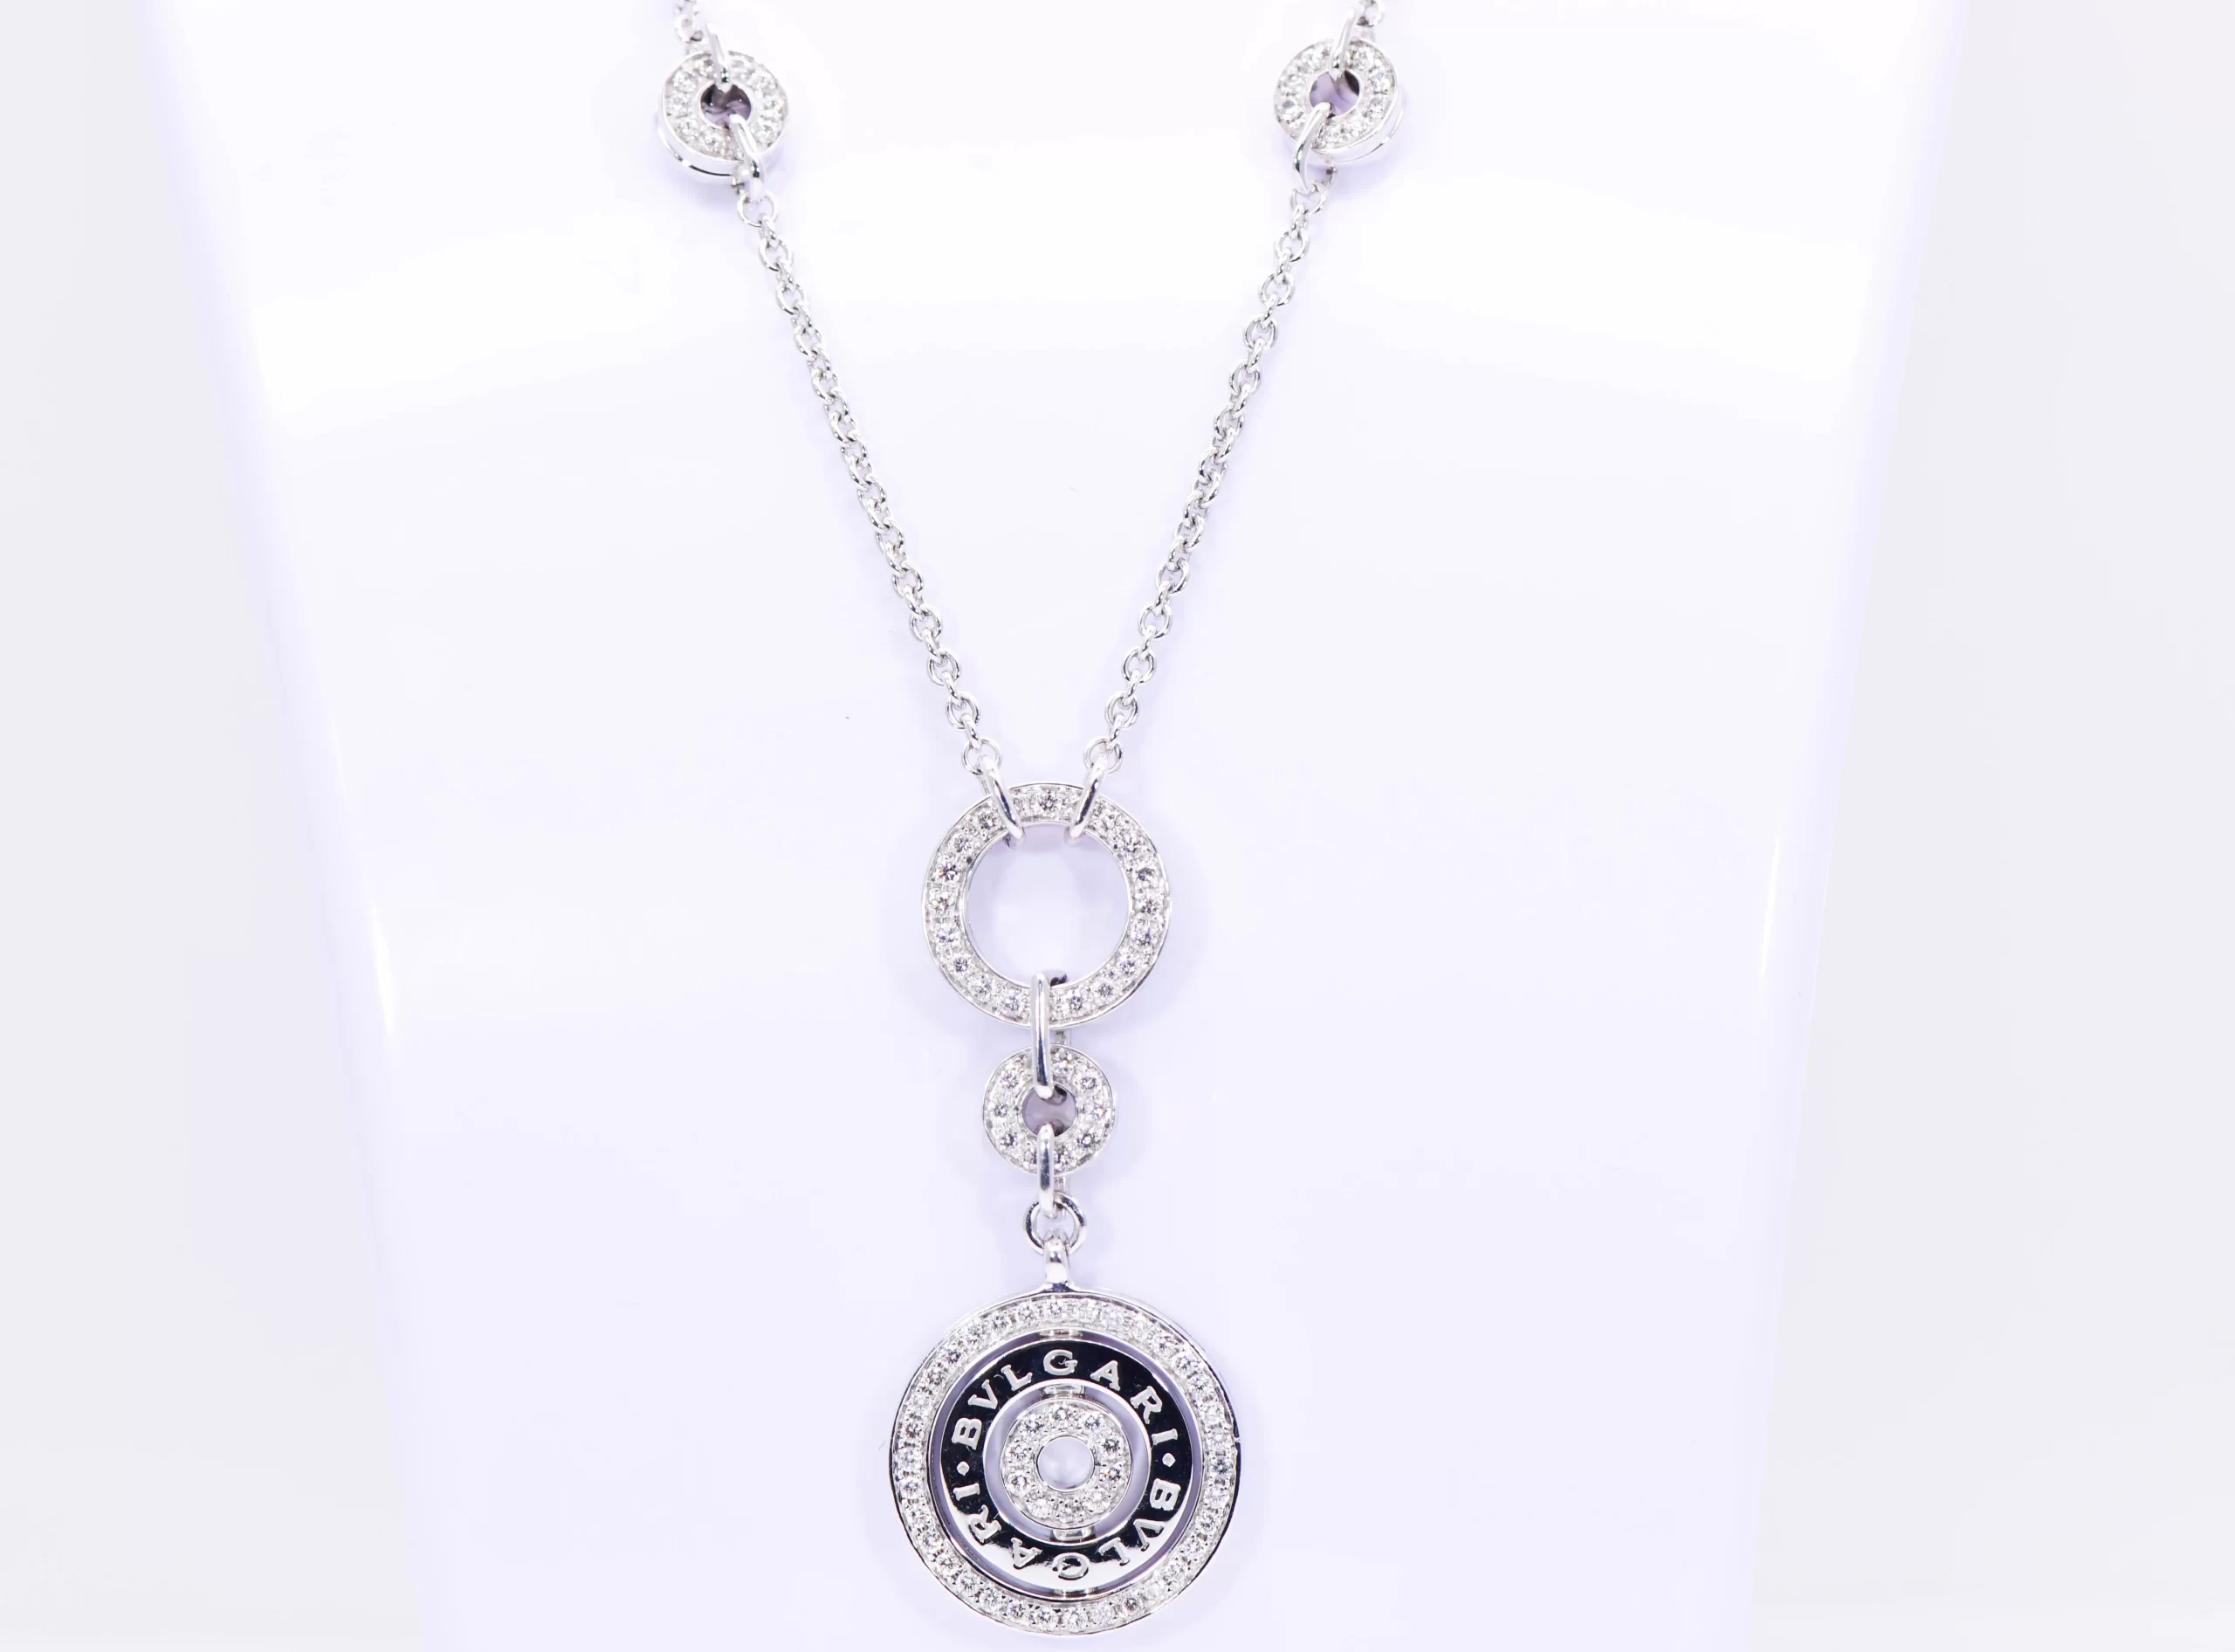 Bvlgari Astrale Cerchi Diamond Necklace